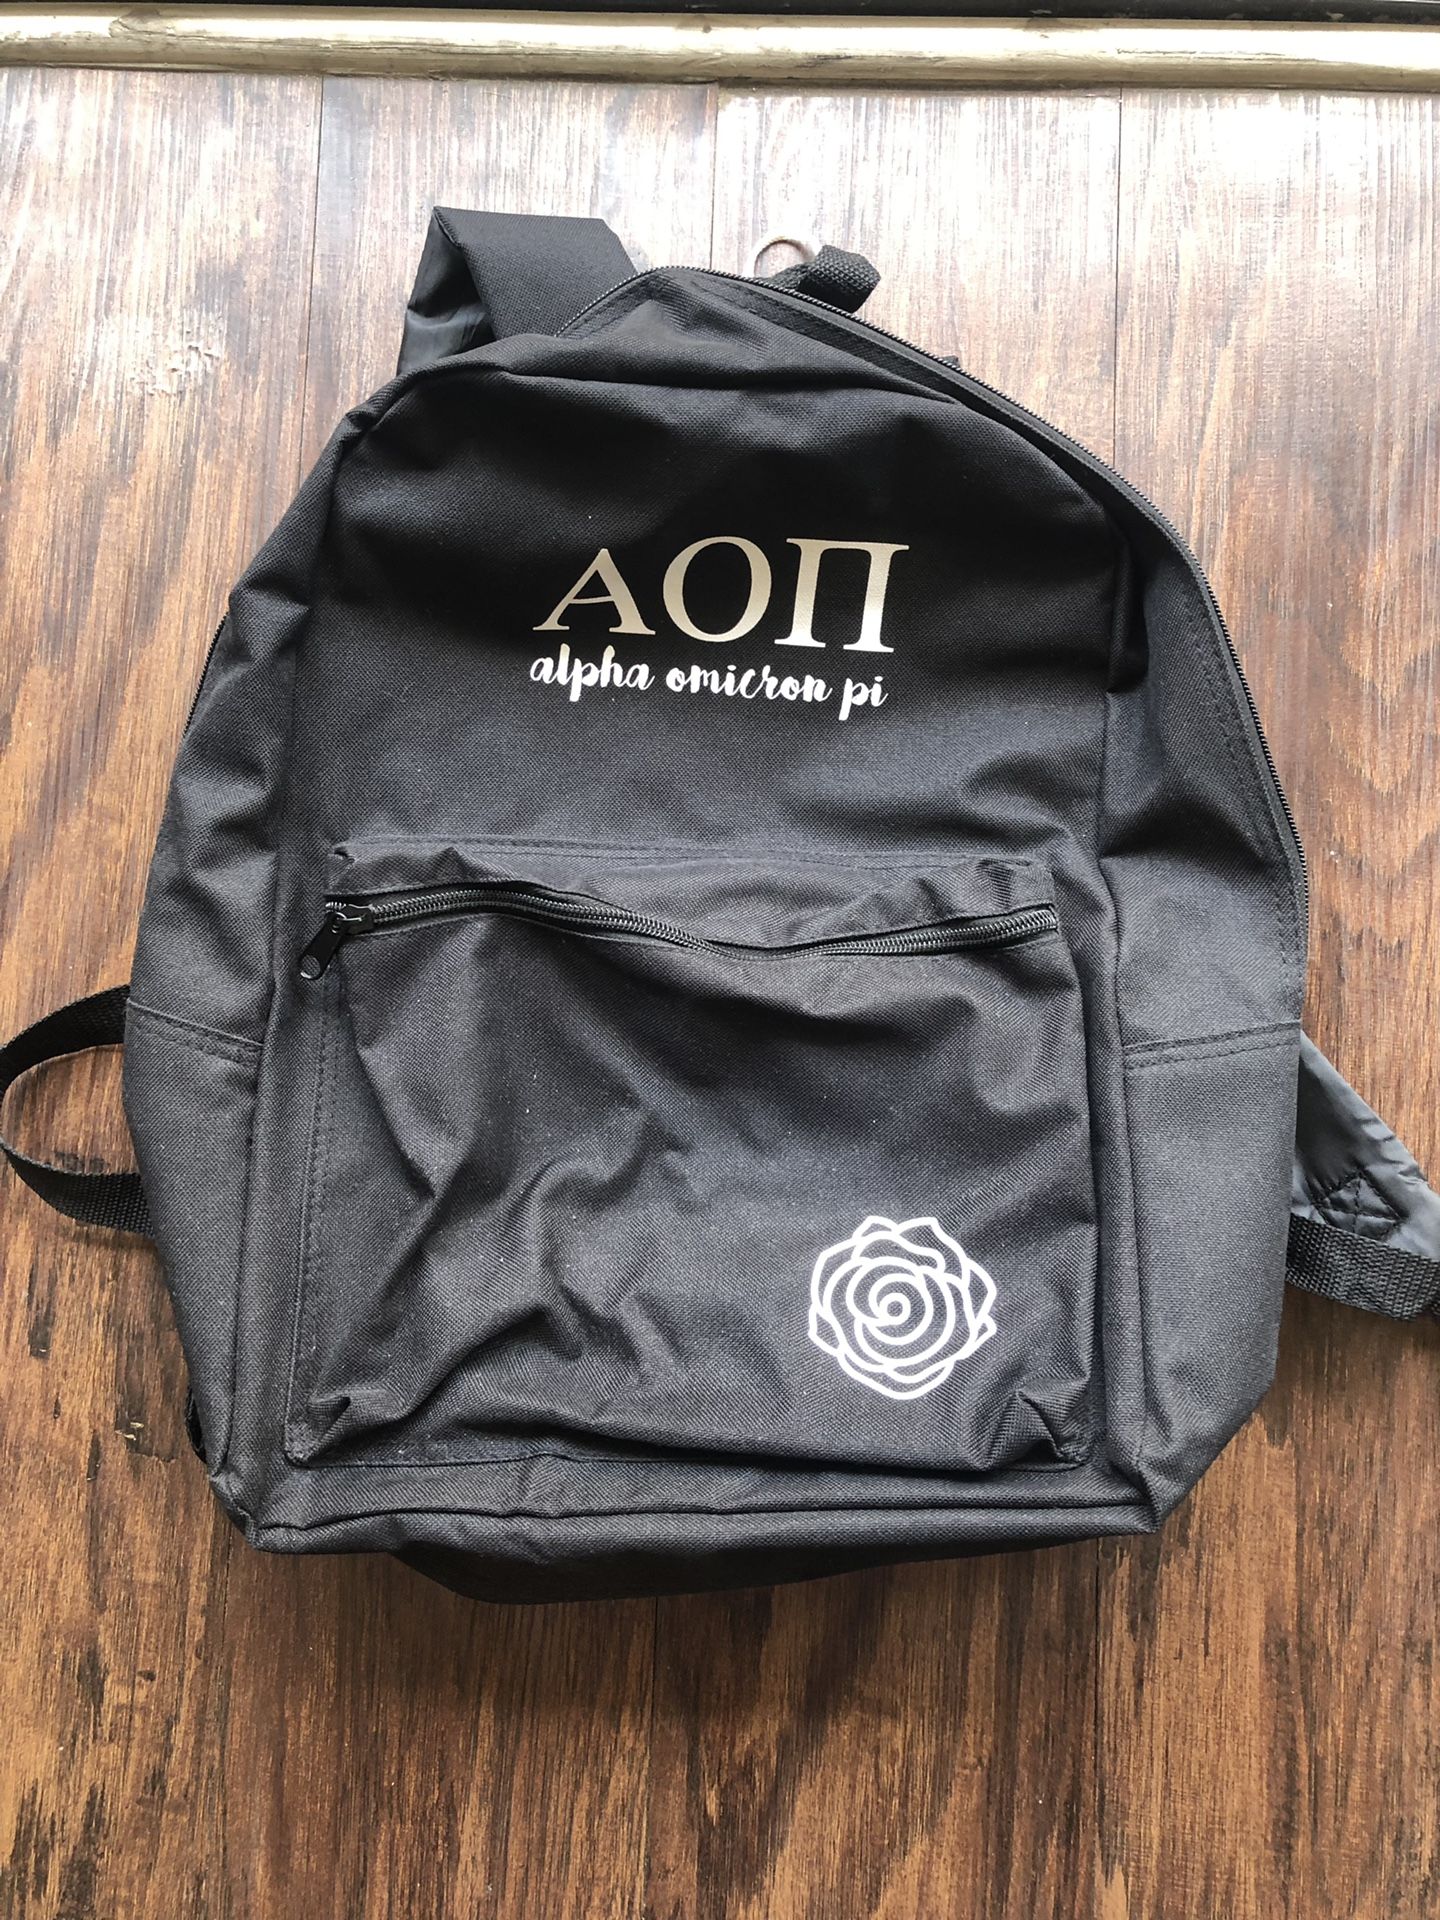 Aoii backpack